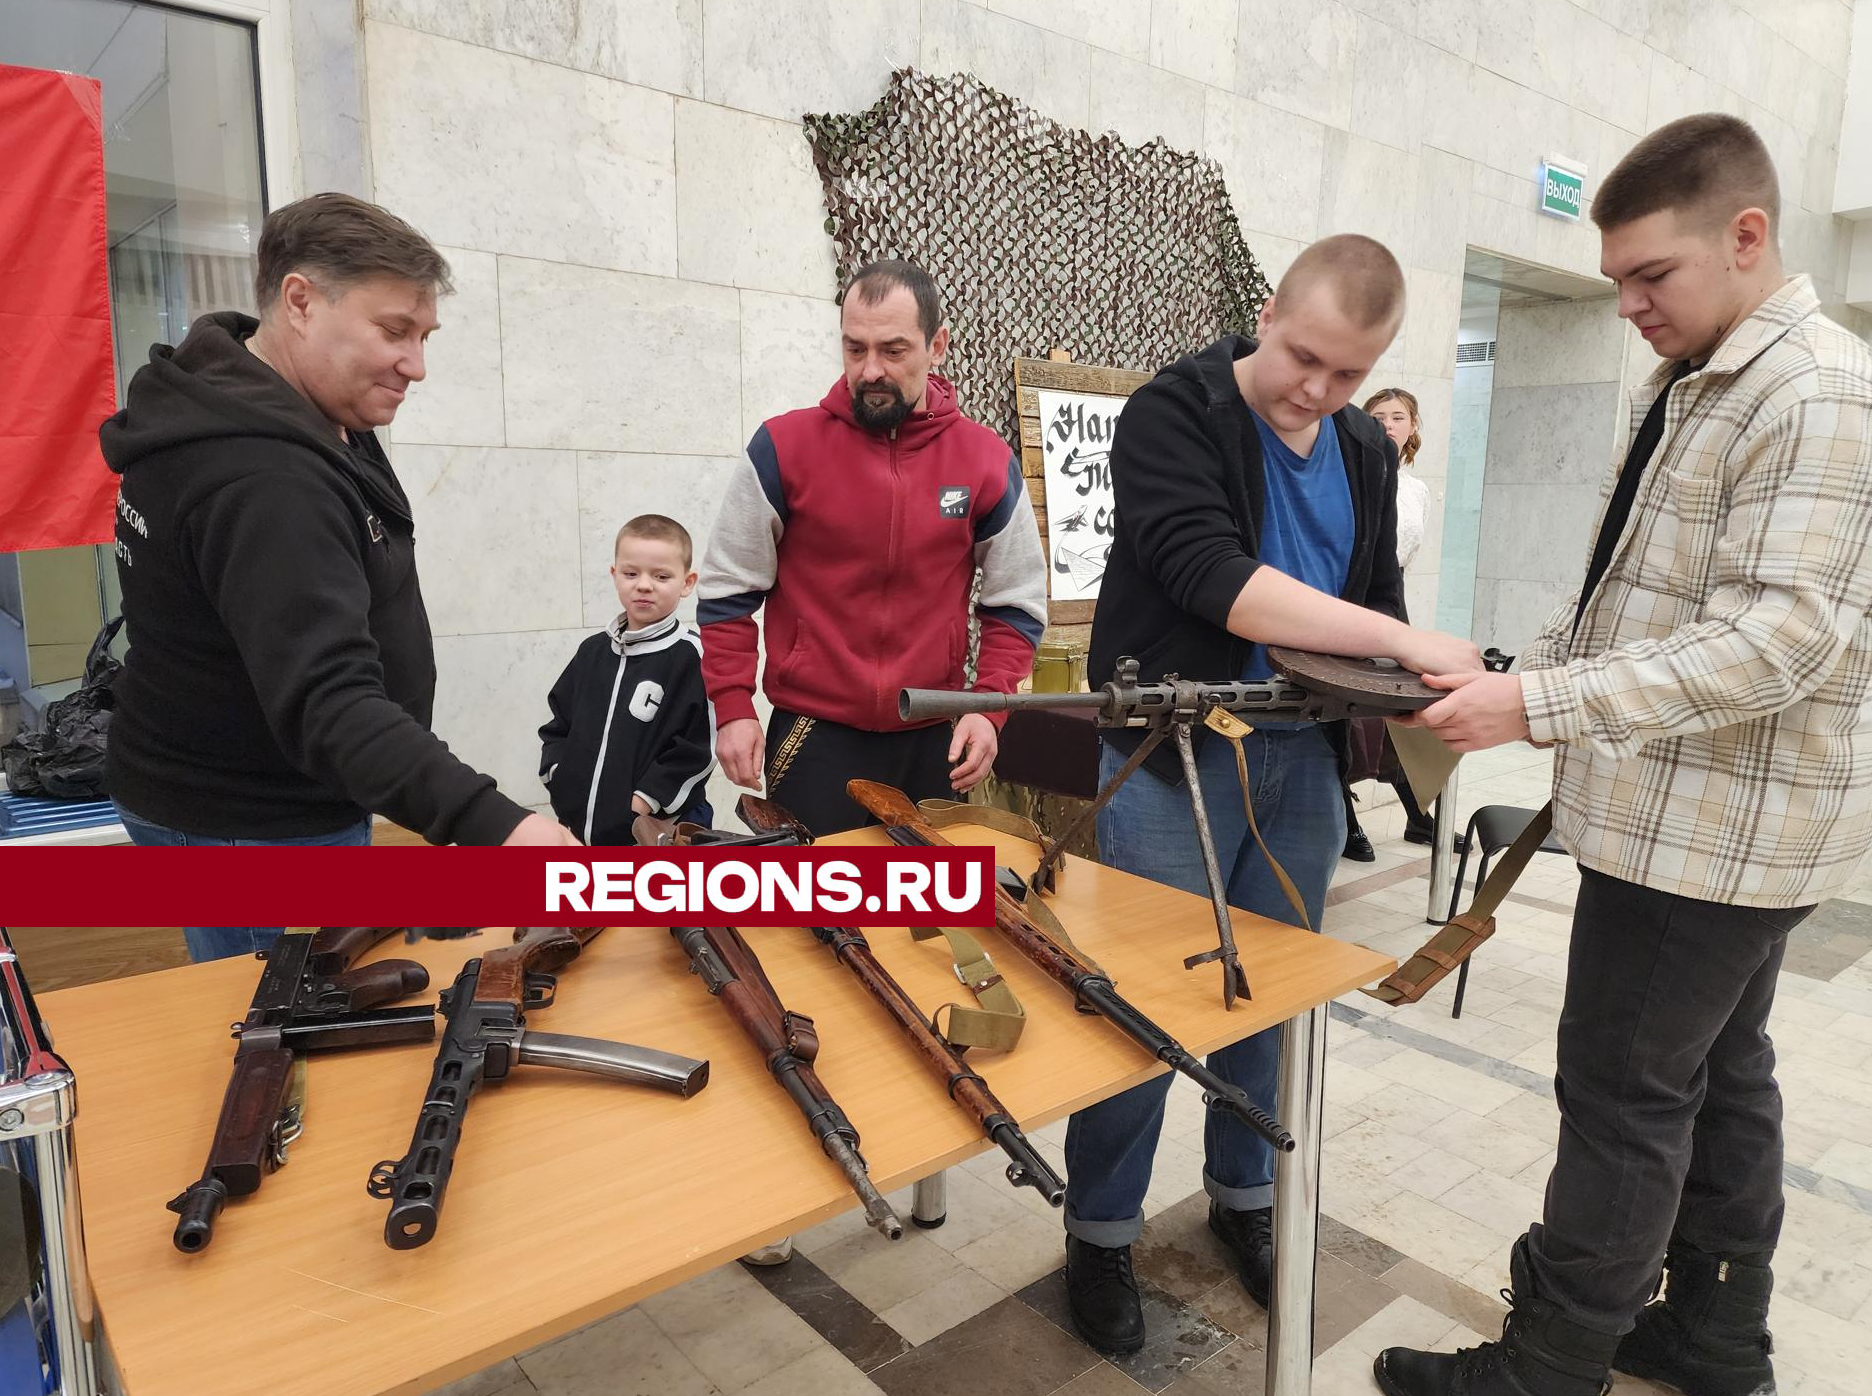 Каска, граната и остатки пулемета «Максим»: в Подольске представили выставку военных экспонатов